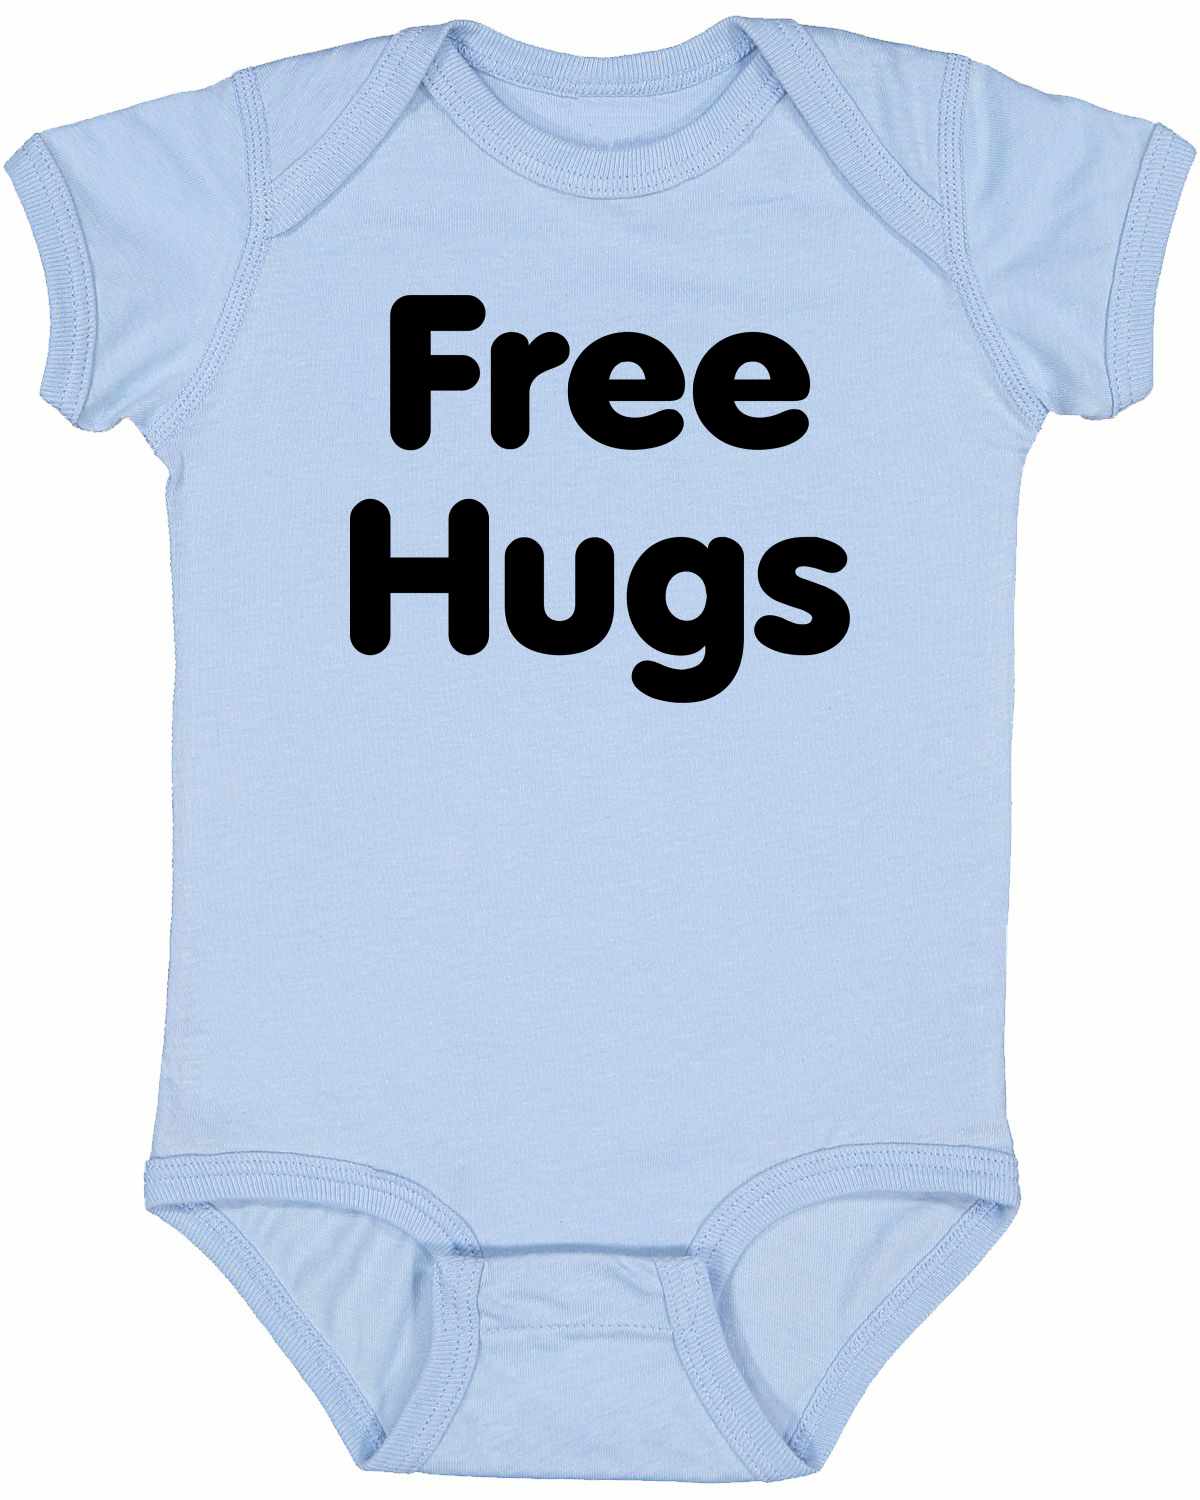 FREE HUGS on Infant BodySuit